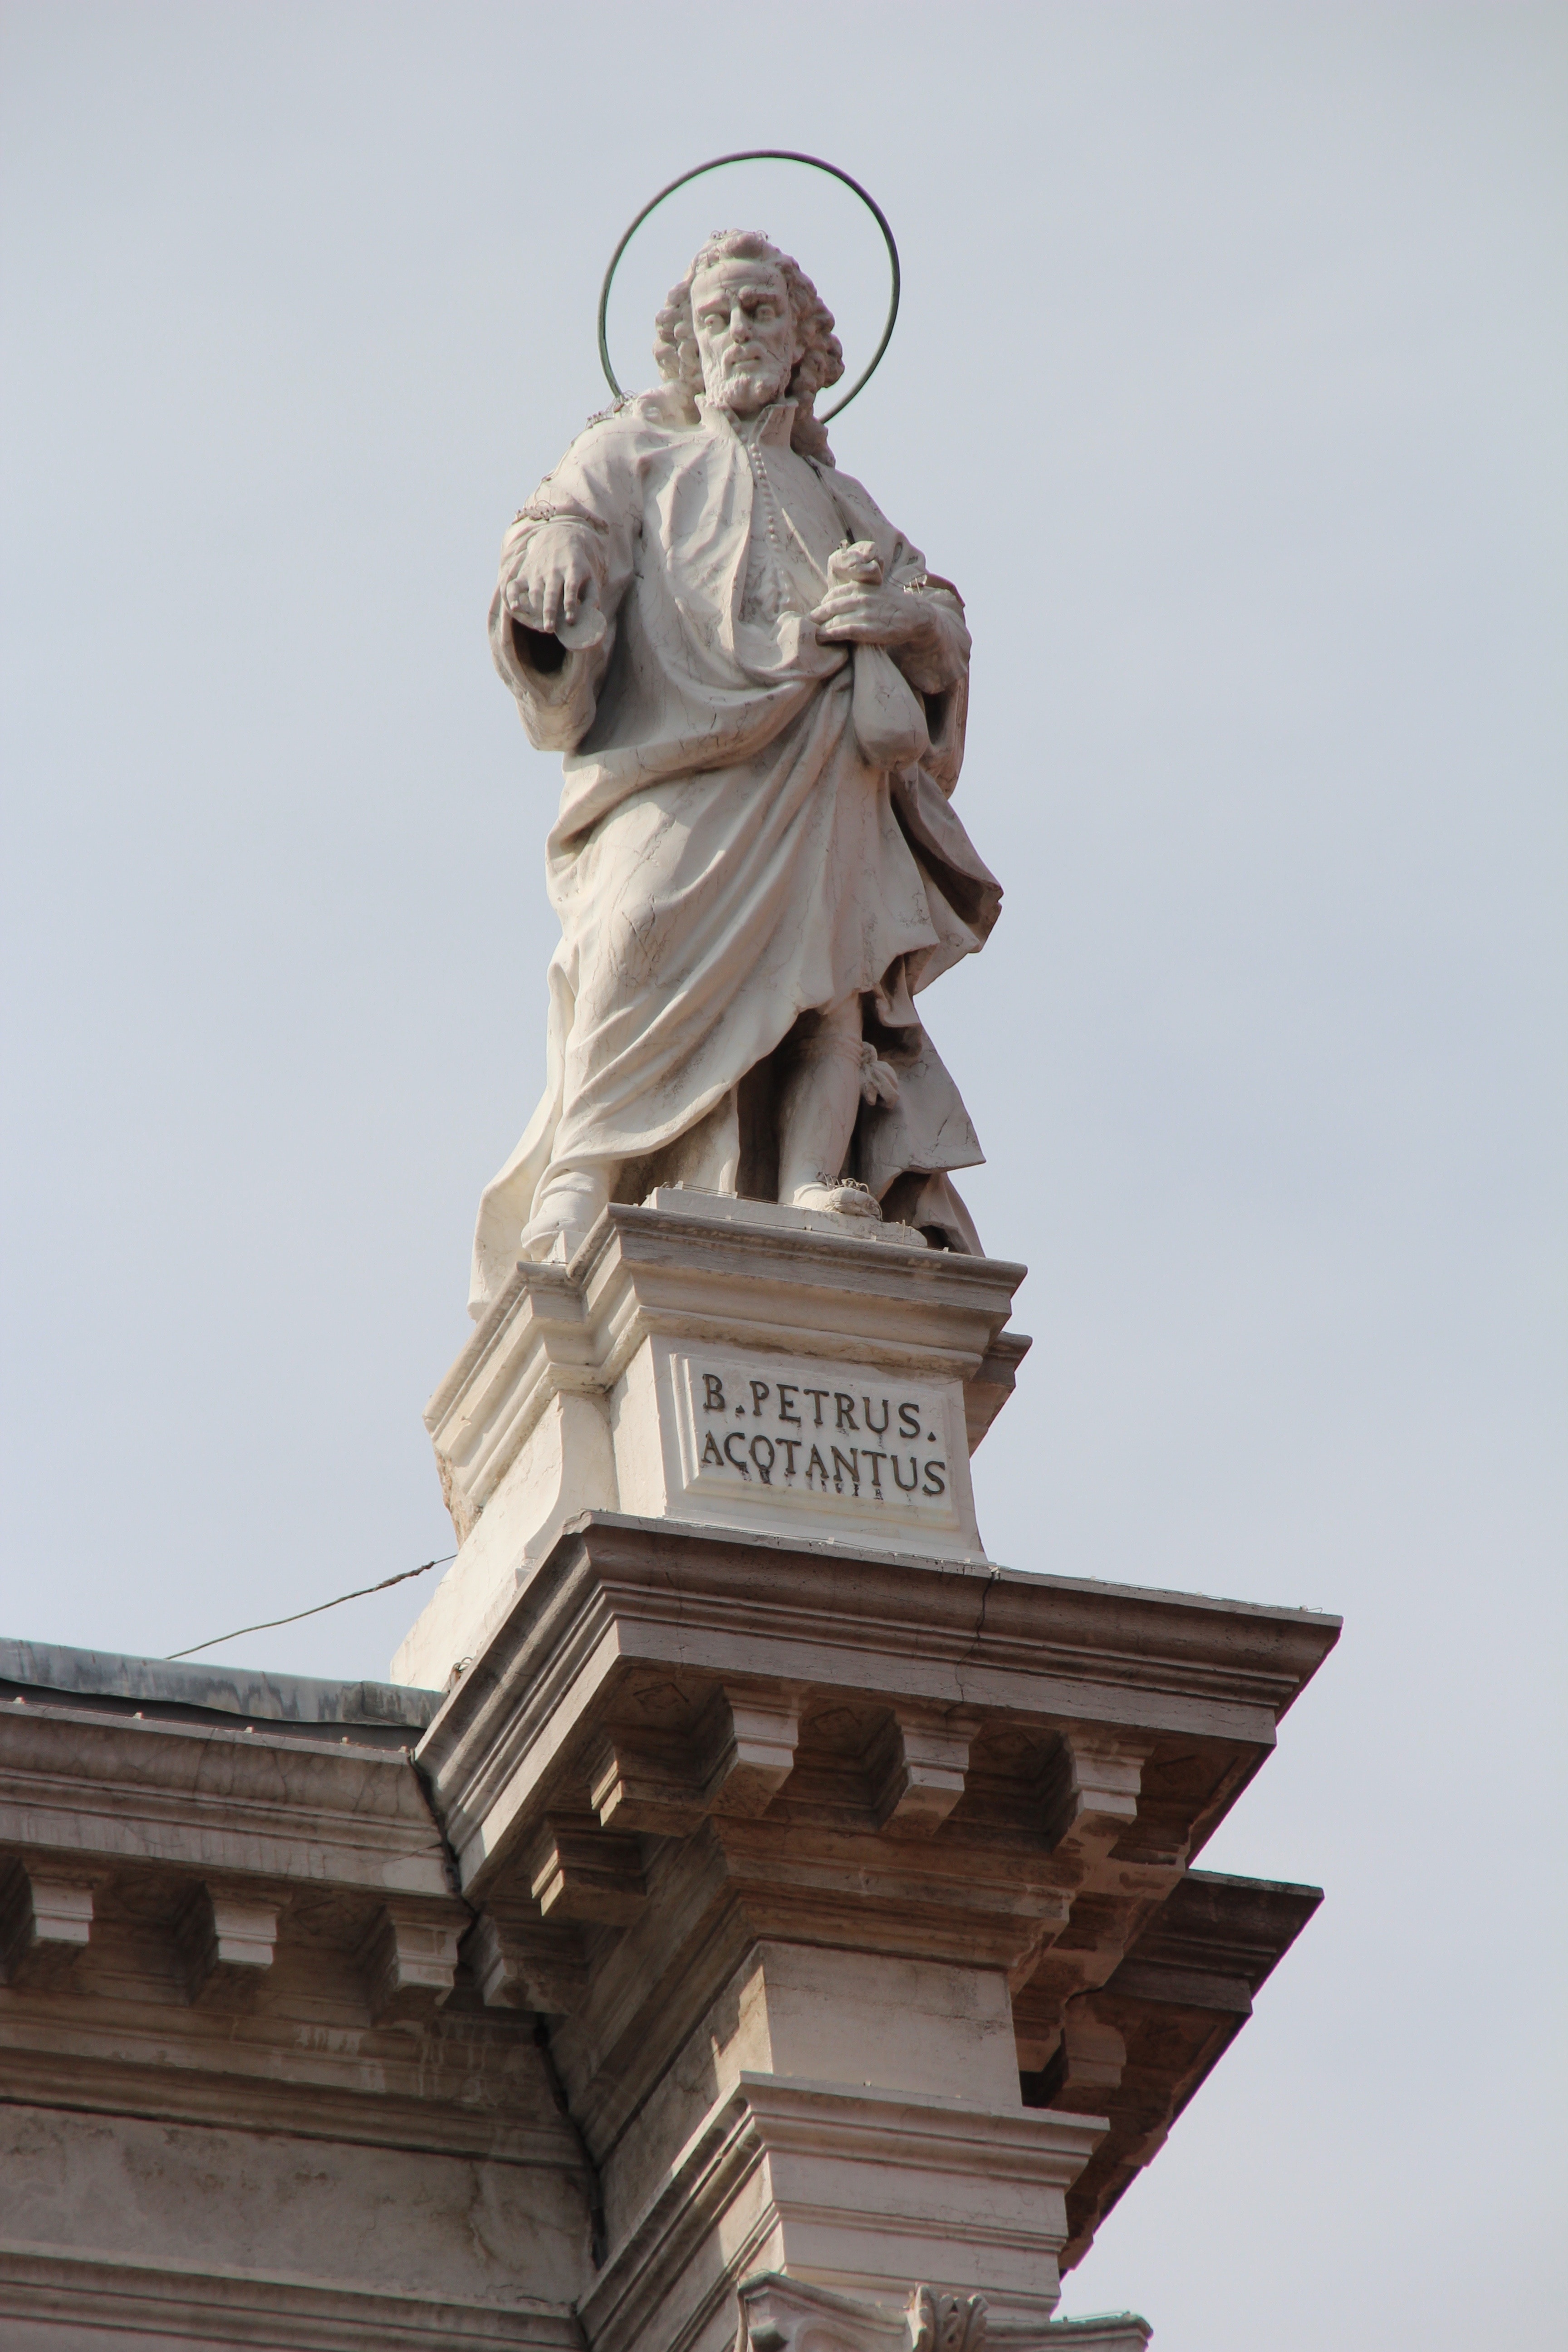 b.petrus acqtantus statue